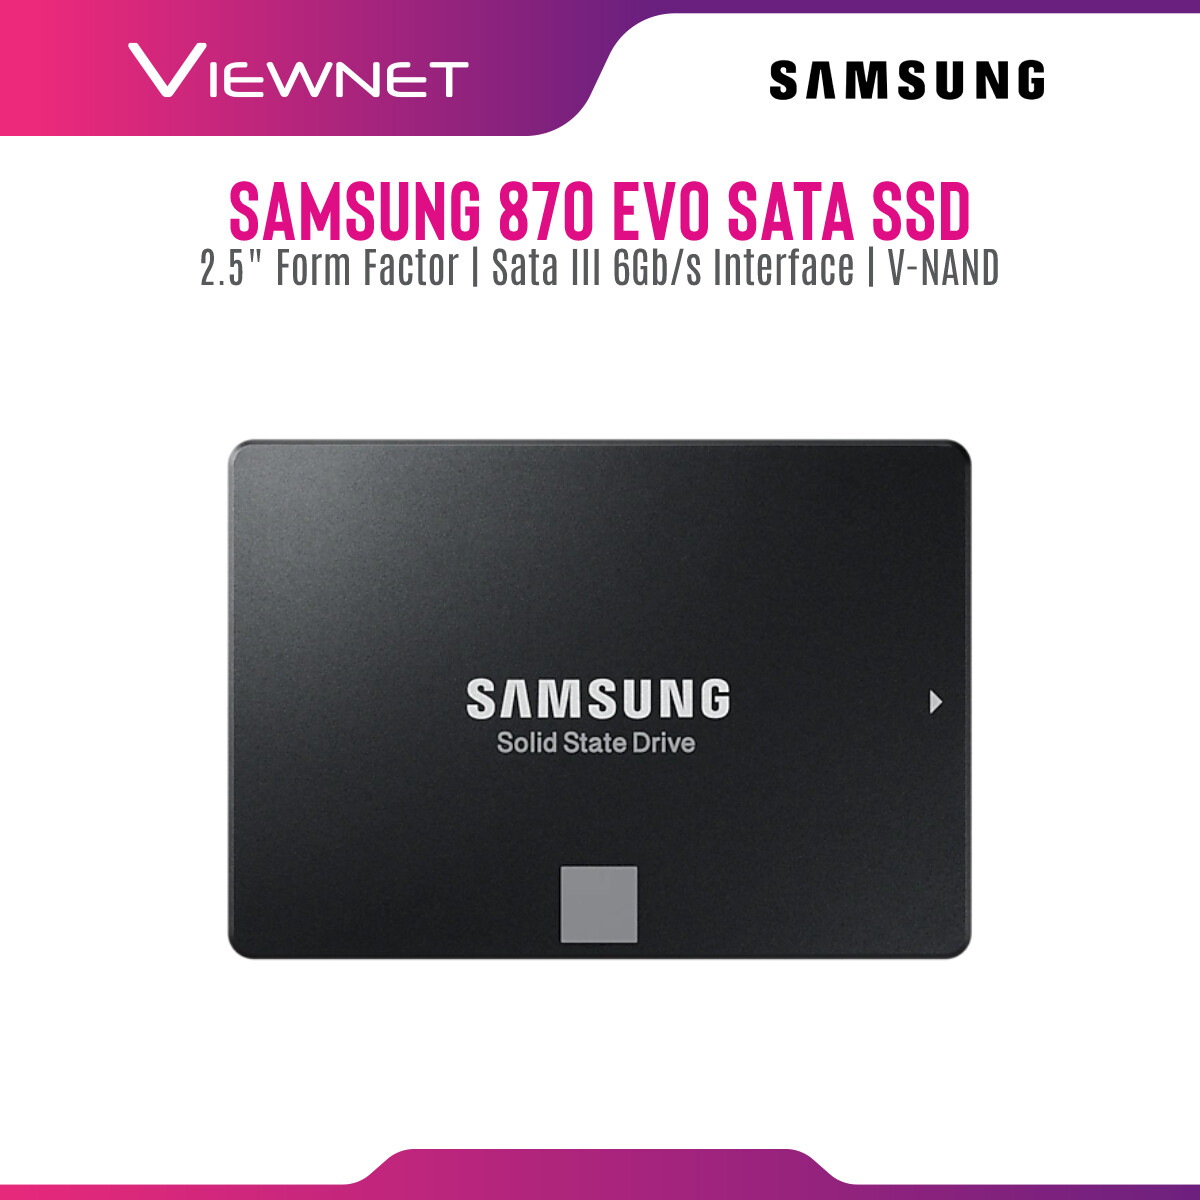 Samsung Internal SSD 860 EVO / 870 EVO SATA III 2.5 inch V-NAND 3 bit MLC Internal Solid State Drive (250GB/500GB/1TB/2TB/4TB) Up to 550MB/s Internal SSD